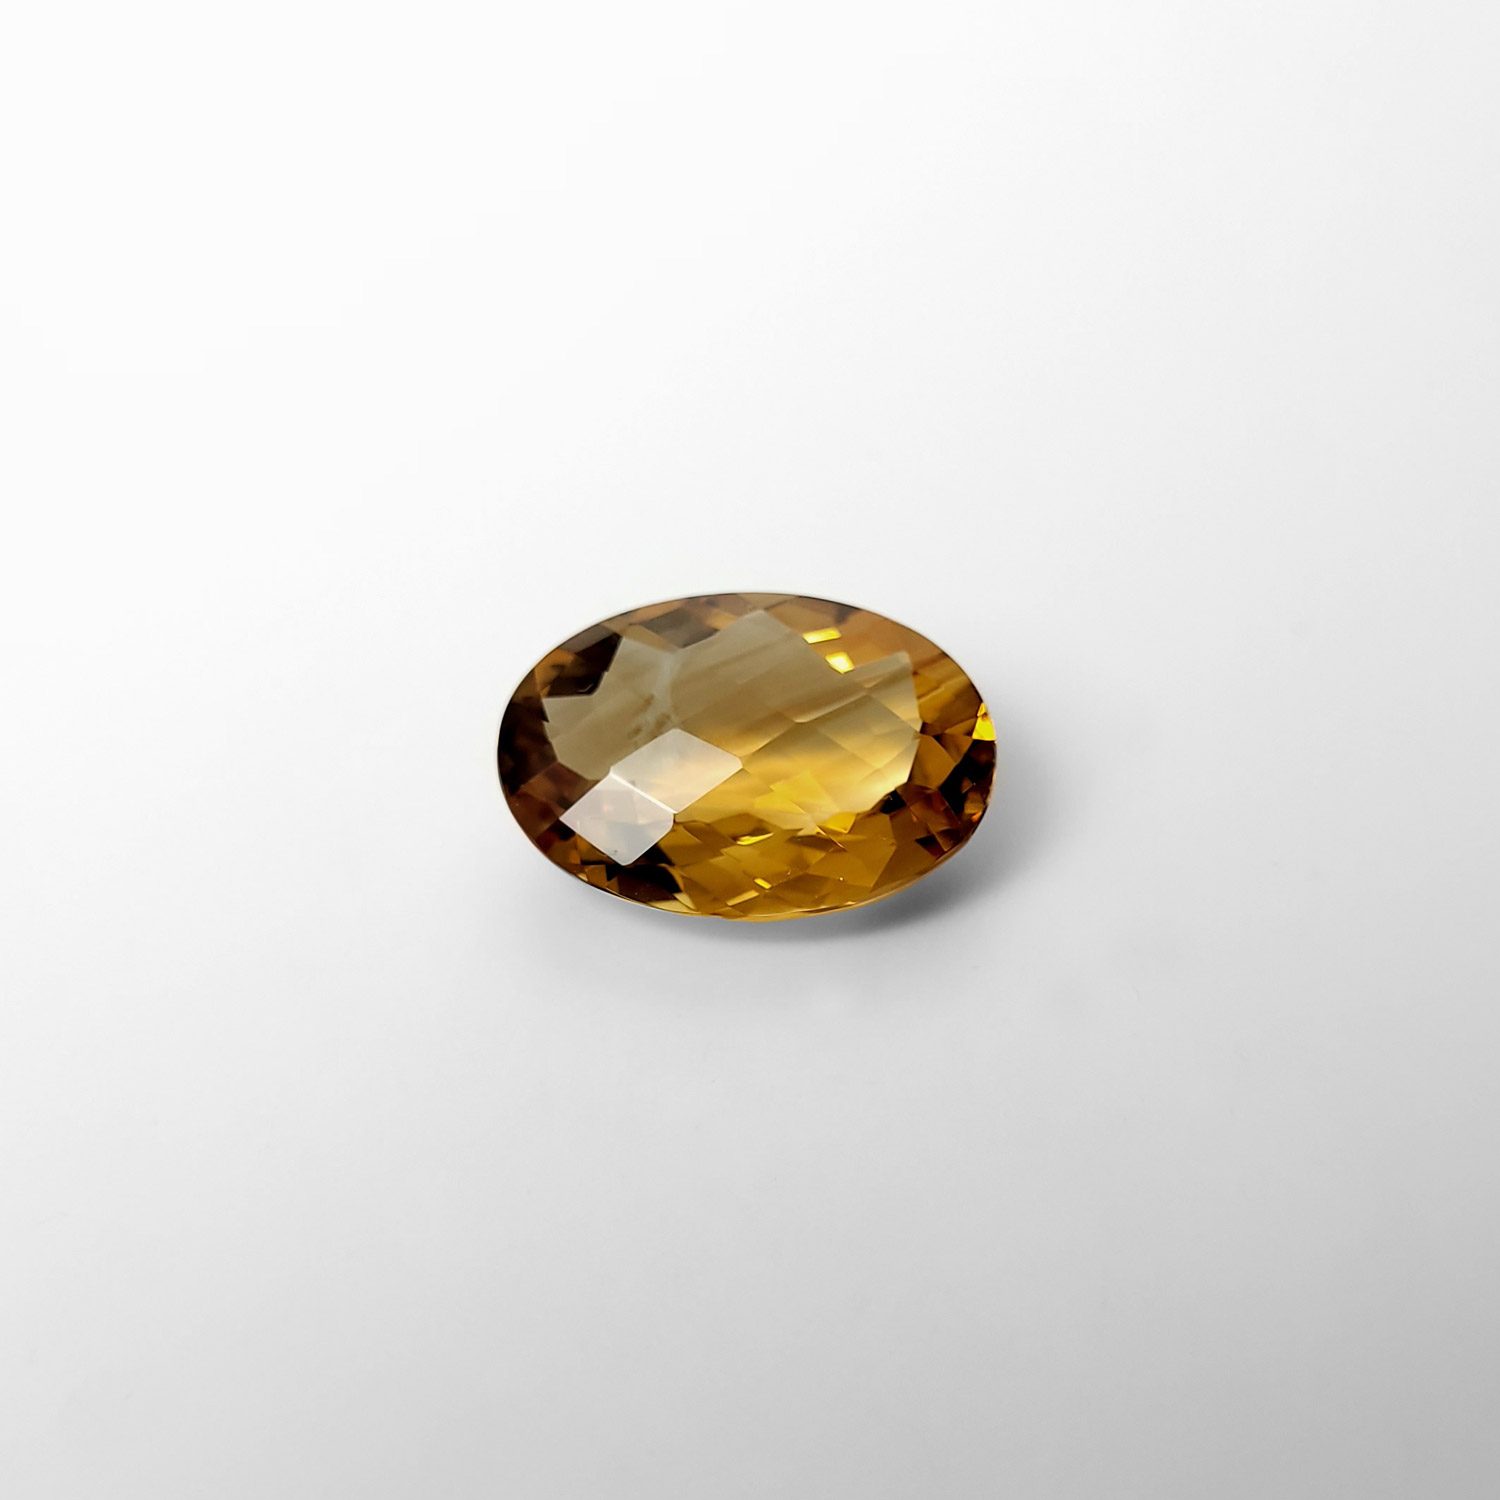 Dieser nachhaltige Edelstein von Schütt ist ein oval facettiert Citrin in gelb.